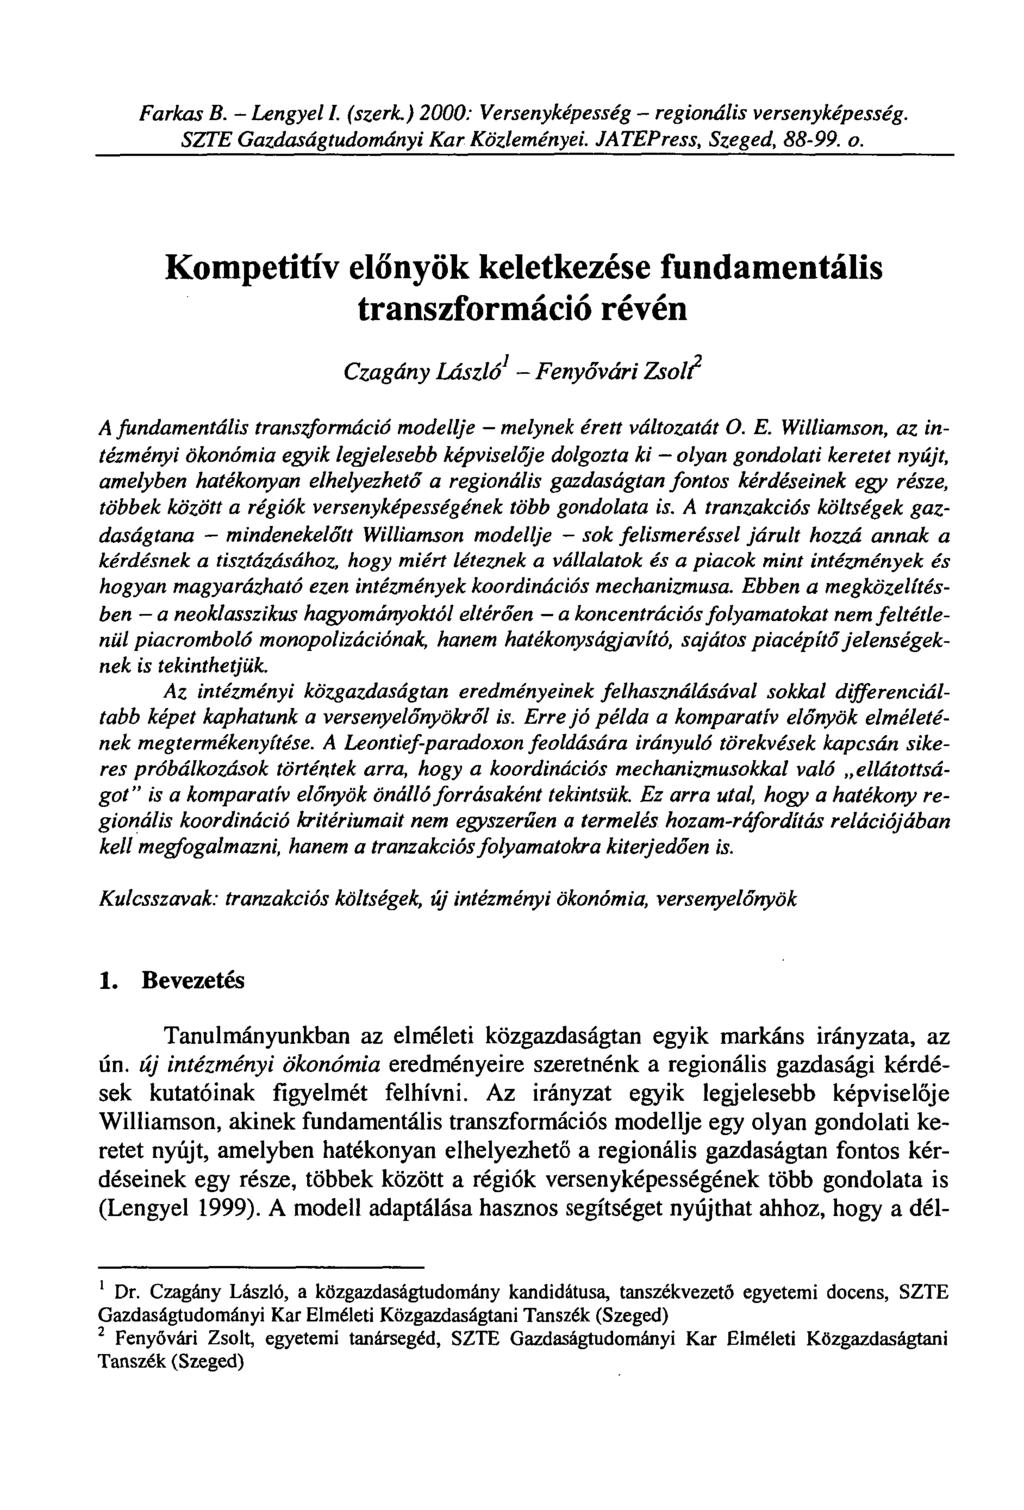 Farkas B. - Lengyel I. (szerk.) 2000: Versenyképesség - regionális versenyképesség. SZTE Gazdaságtudományi Kar Közleményei. JATEPress, Szeged, 88-114. o.